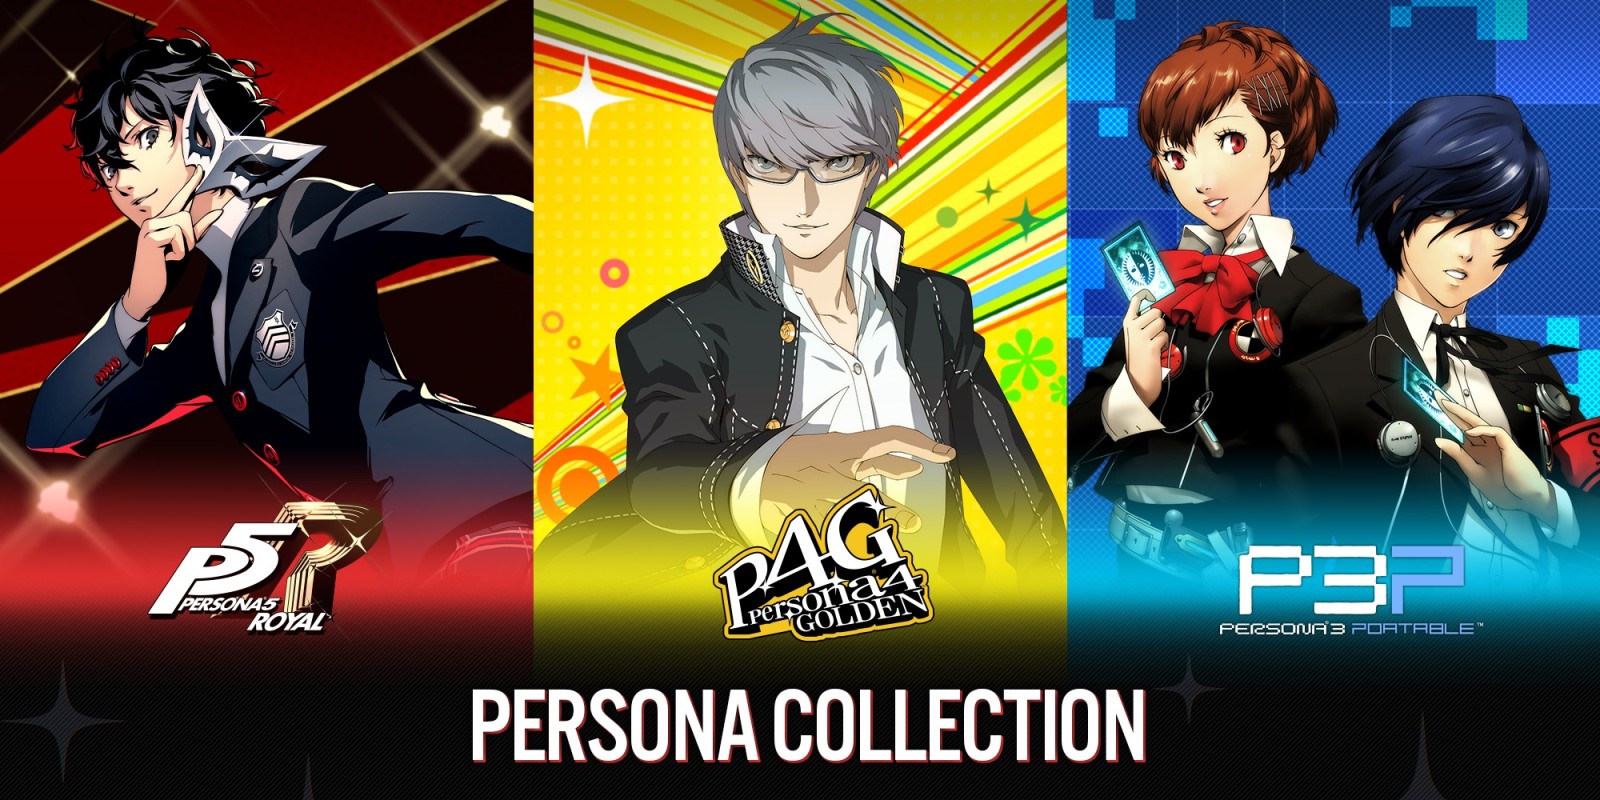 #Neue Persona Collection will angehende Persona-Fans mit einem Sonderpreis locken